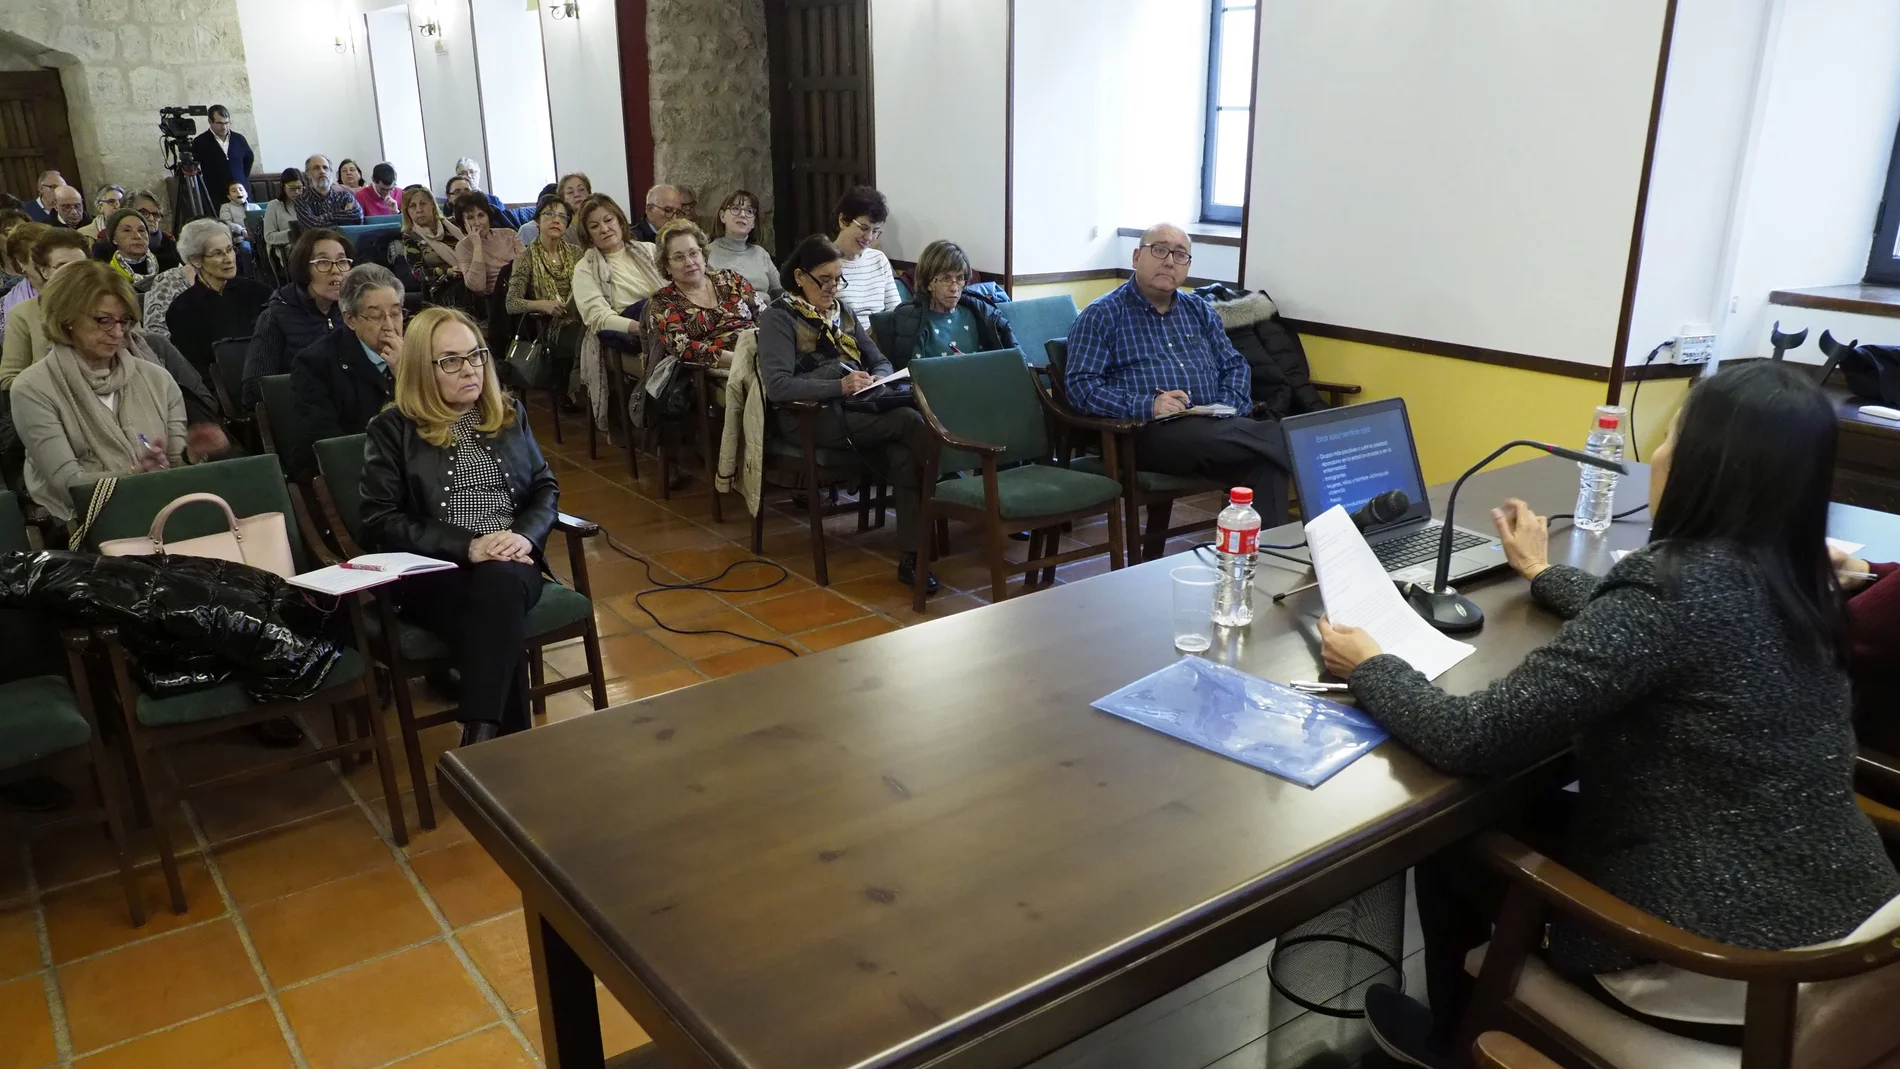 La profesora de la Universidad de Salamanca, Liliana fernández, durante su ponencia en el Curso Acompañar en Soledad organizado por la Iglesia en Valladolid